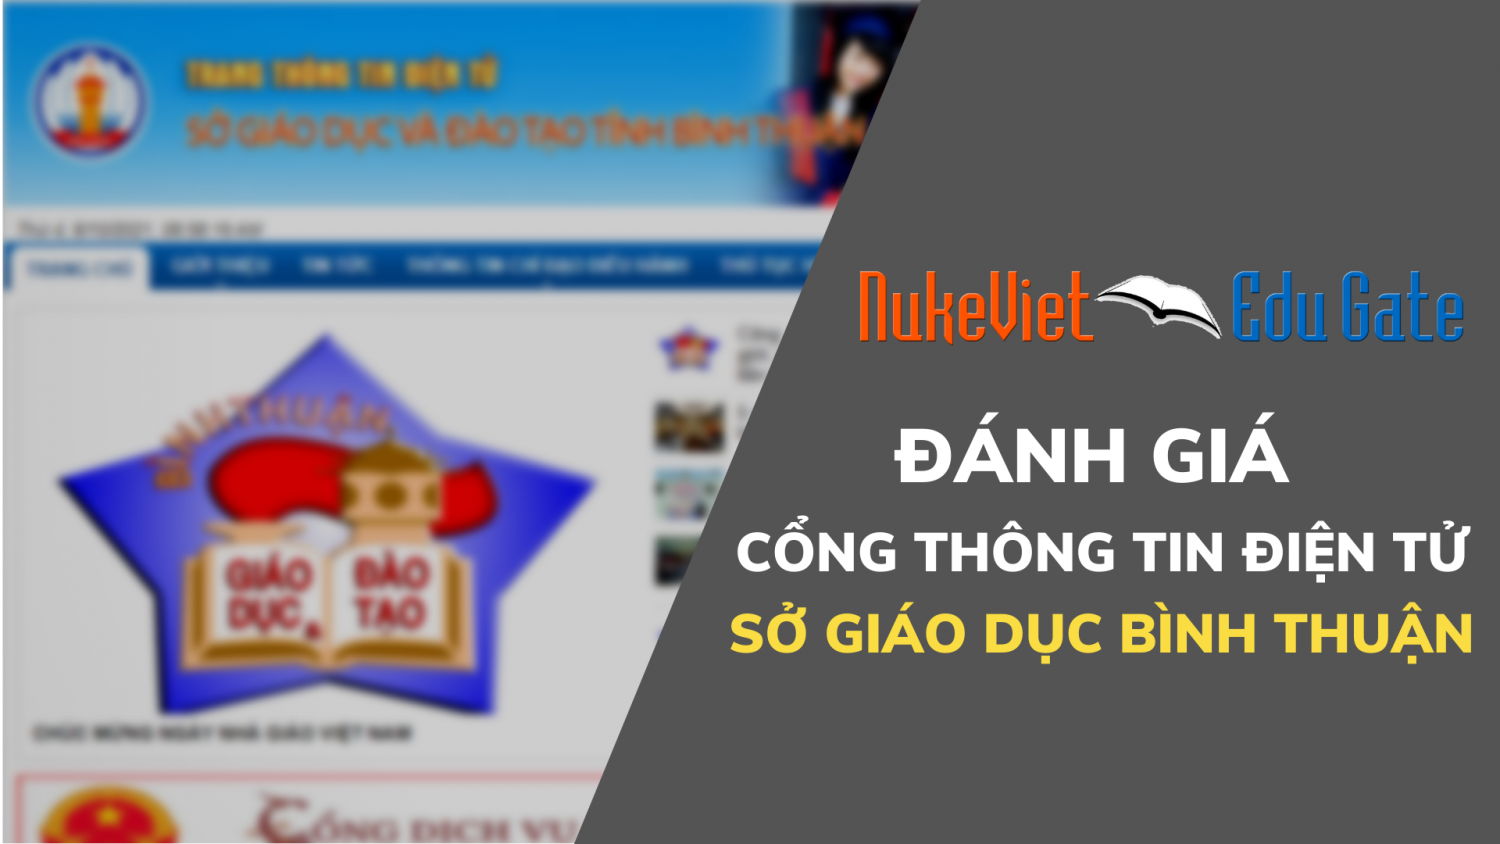 Đánh giá Cổng thông tin điện tử Sở giáo dục Bình Thuận